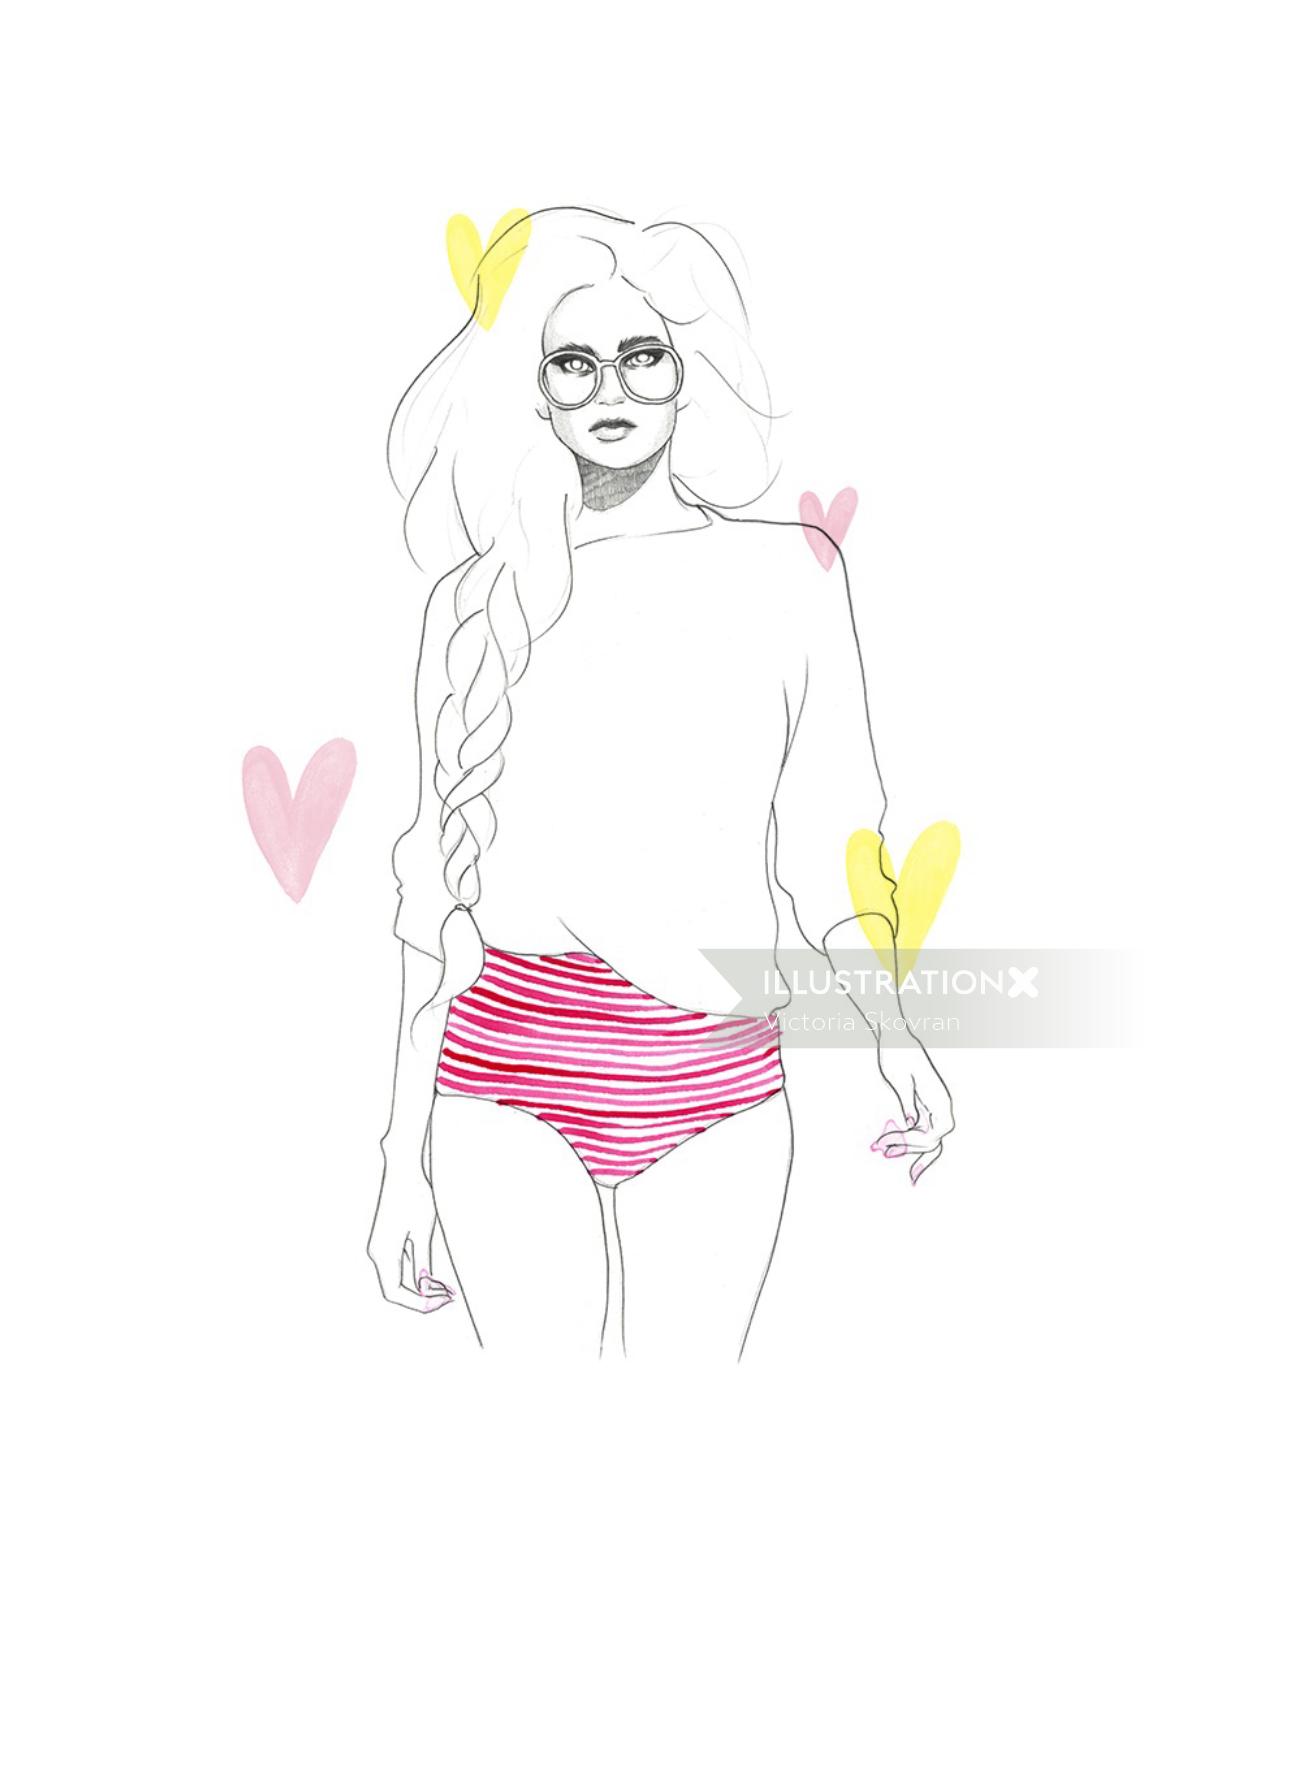 Fashion Woman Drawing By Brooklyn Based Illustrator